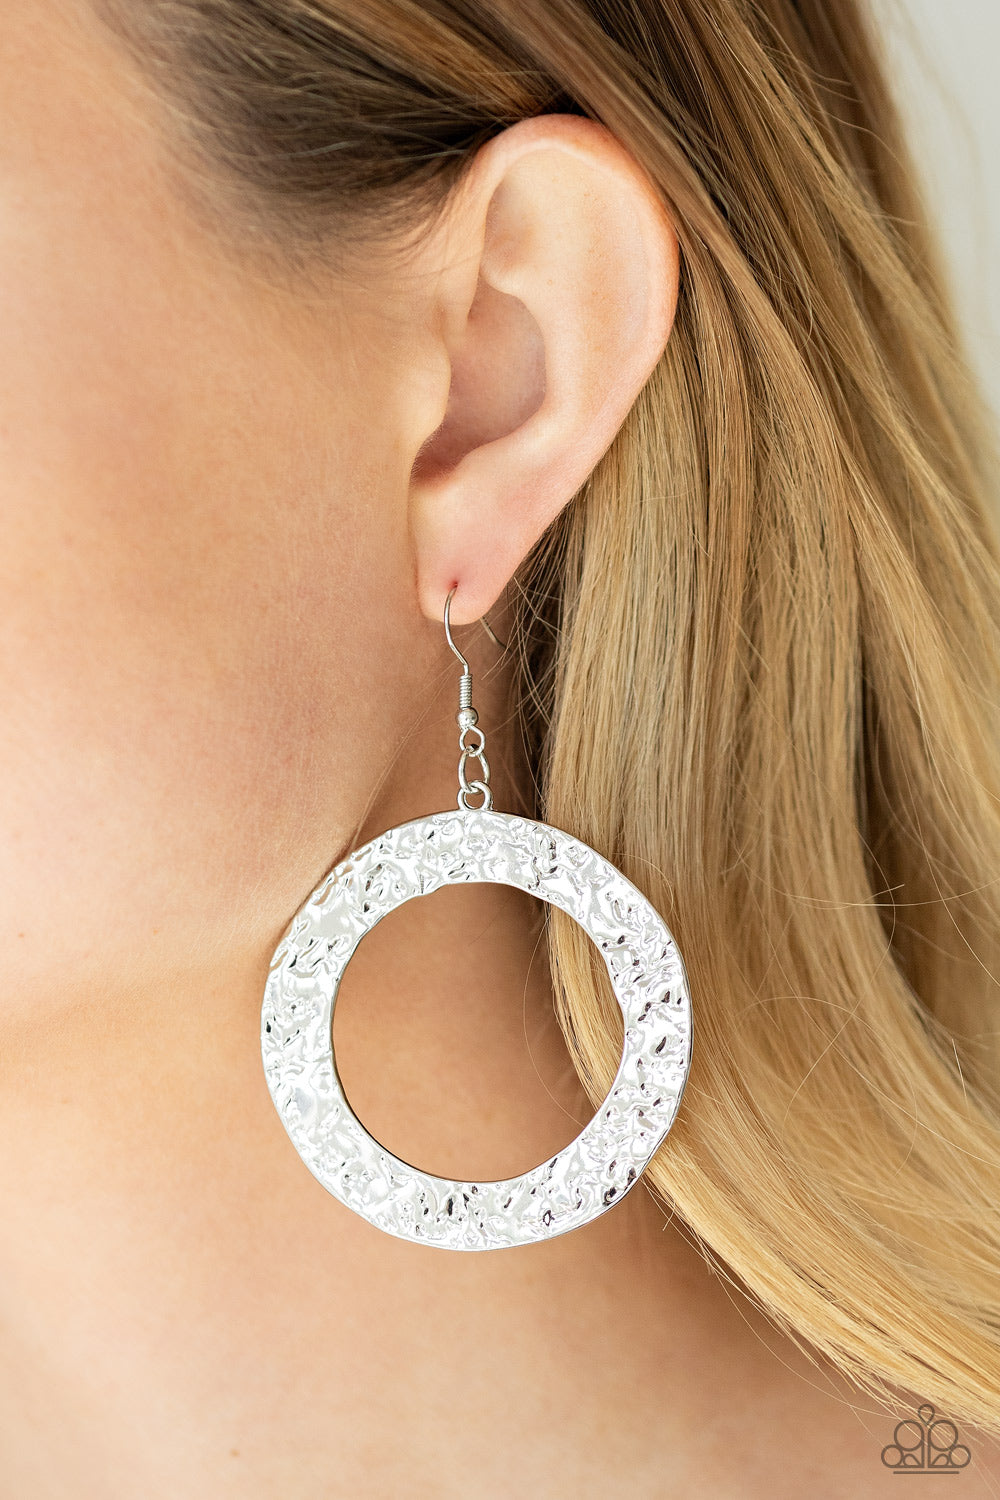 PRIMAL Meridian Silver
Earrings - Daria's Blings N Things